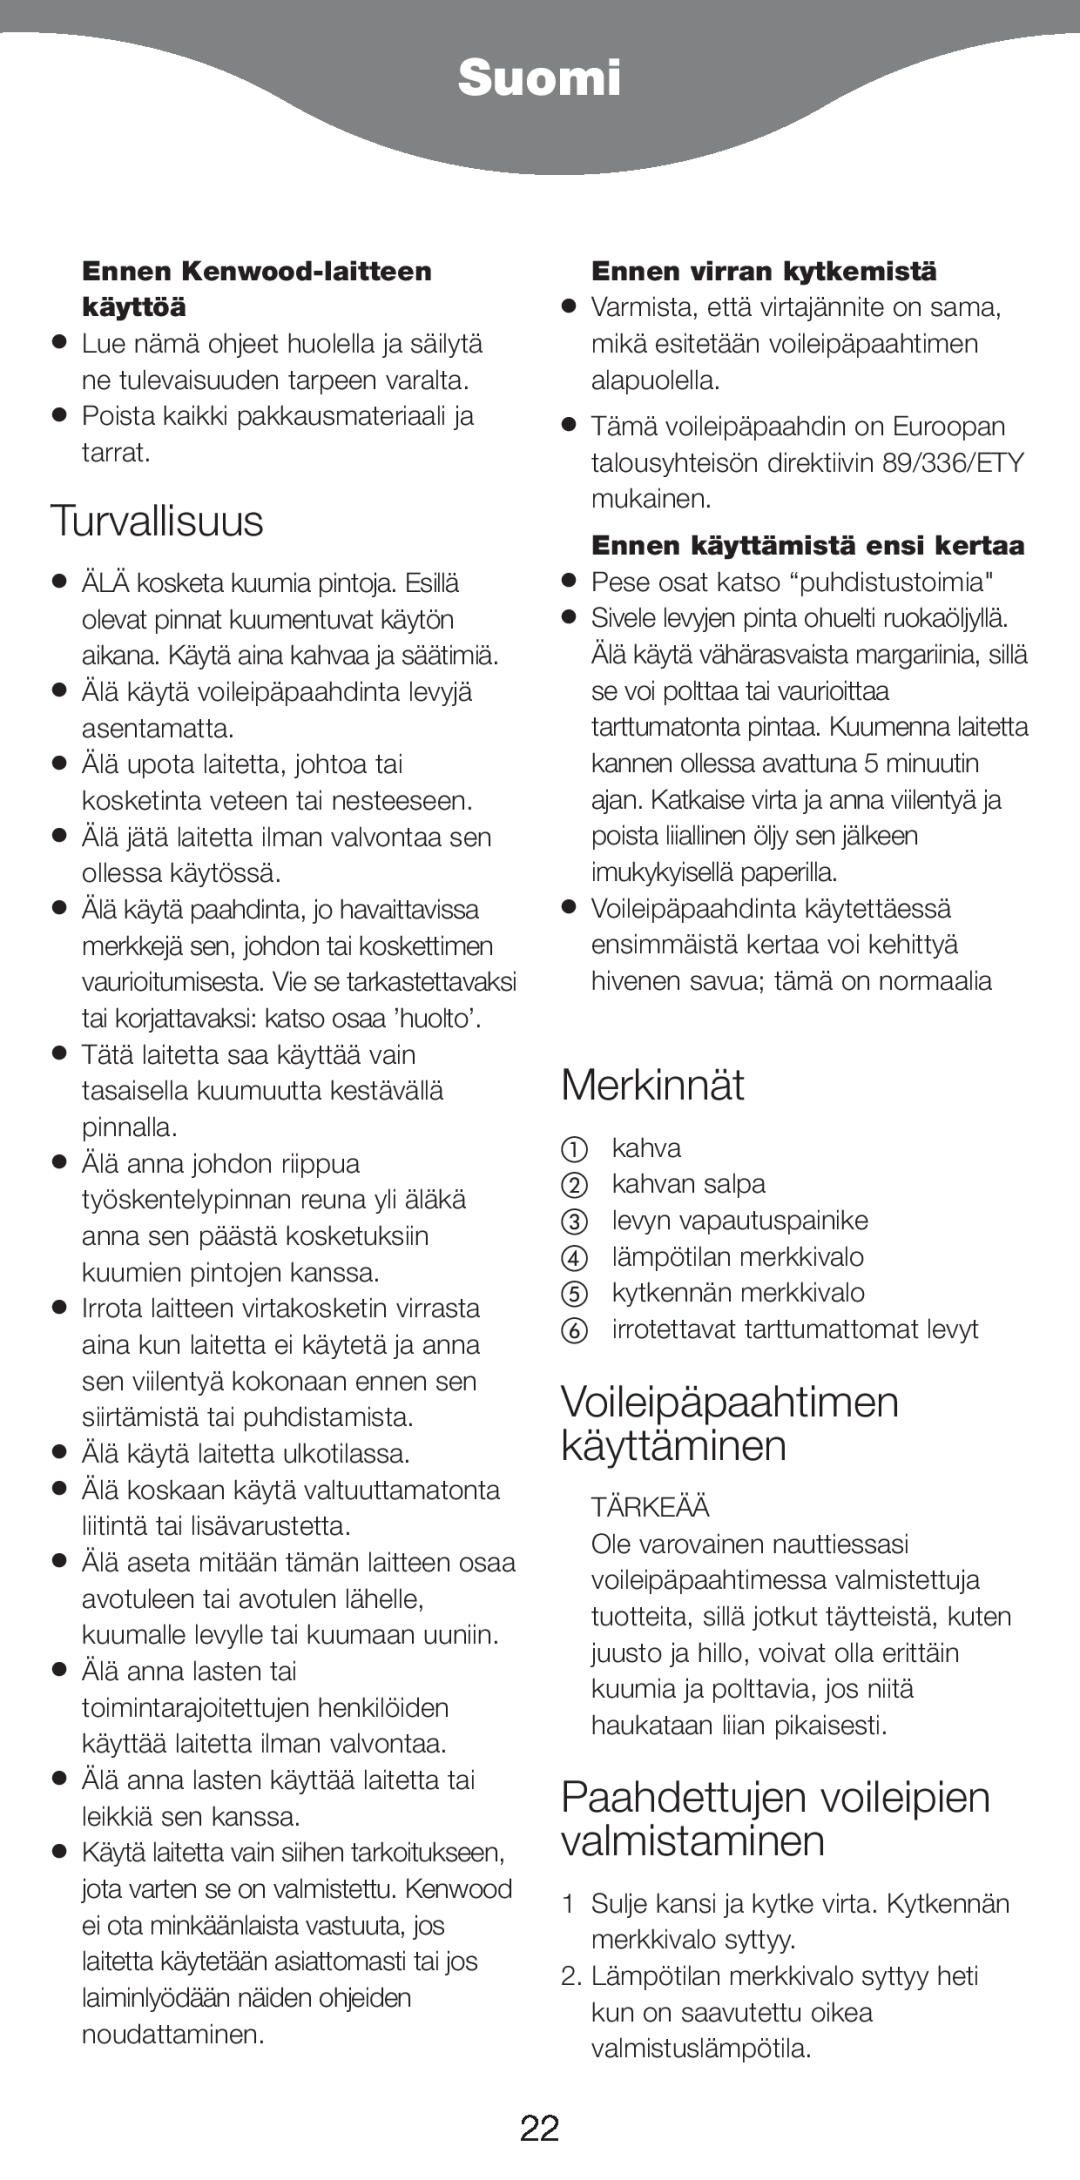 Kenwood SM420 manual Suomi, Turvallisuus, Merkinnät, Voileipäpaahtimen käyttäminen, Paahdettujen voileipien valmistaminen 